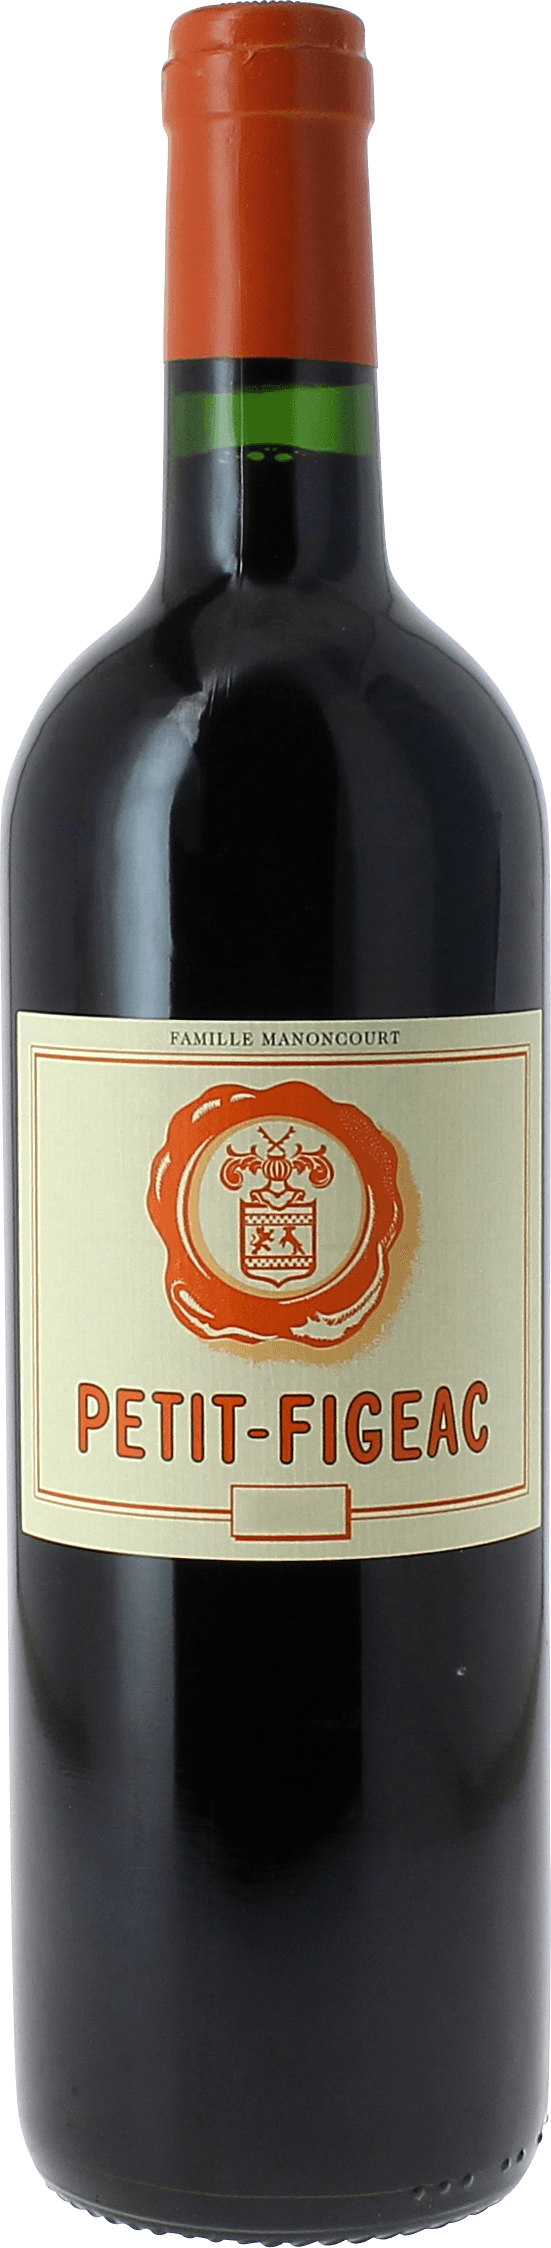 Petit figeac 2nd vin de chteau figeac 2013  Saint-Emilion, Bordeaux rouge